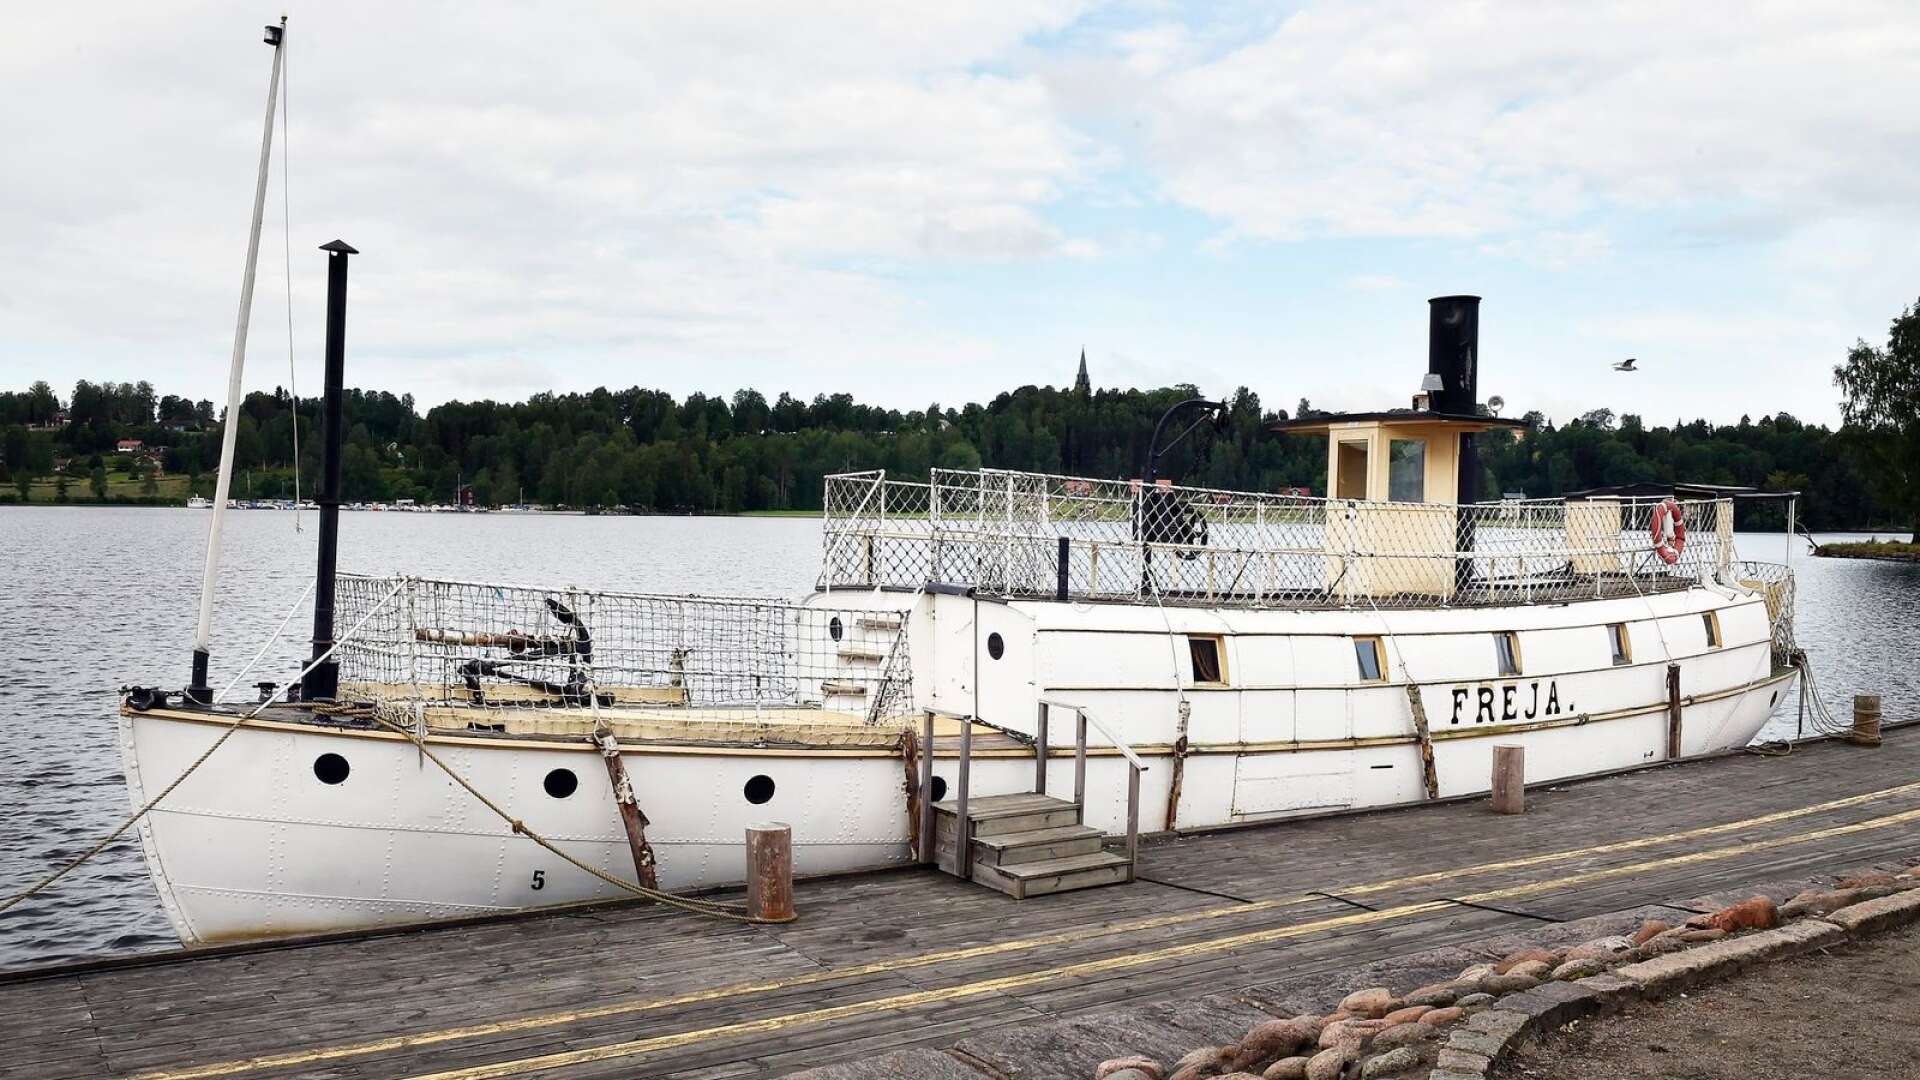 Ångbåten Freja af Fryken, här vid kajen i Fryksta sommaren 2015, kan få en permanent vinterförvaring som också kan bli ett museum inom något år. En ny detaljplan för området ska tas fram.